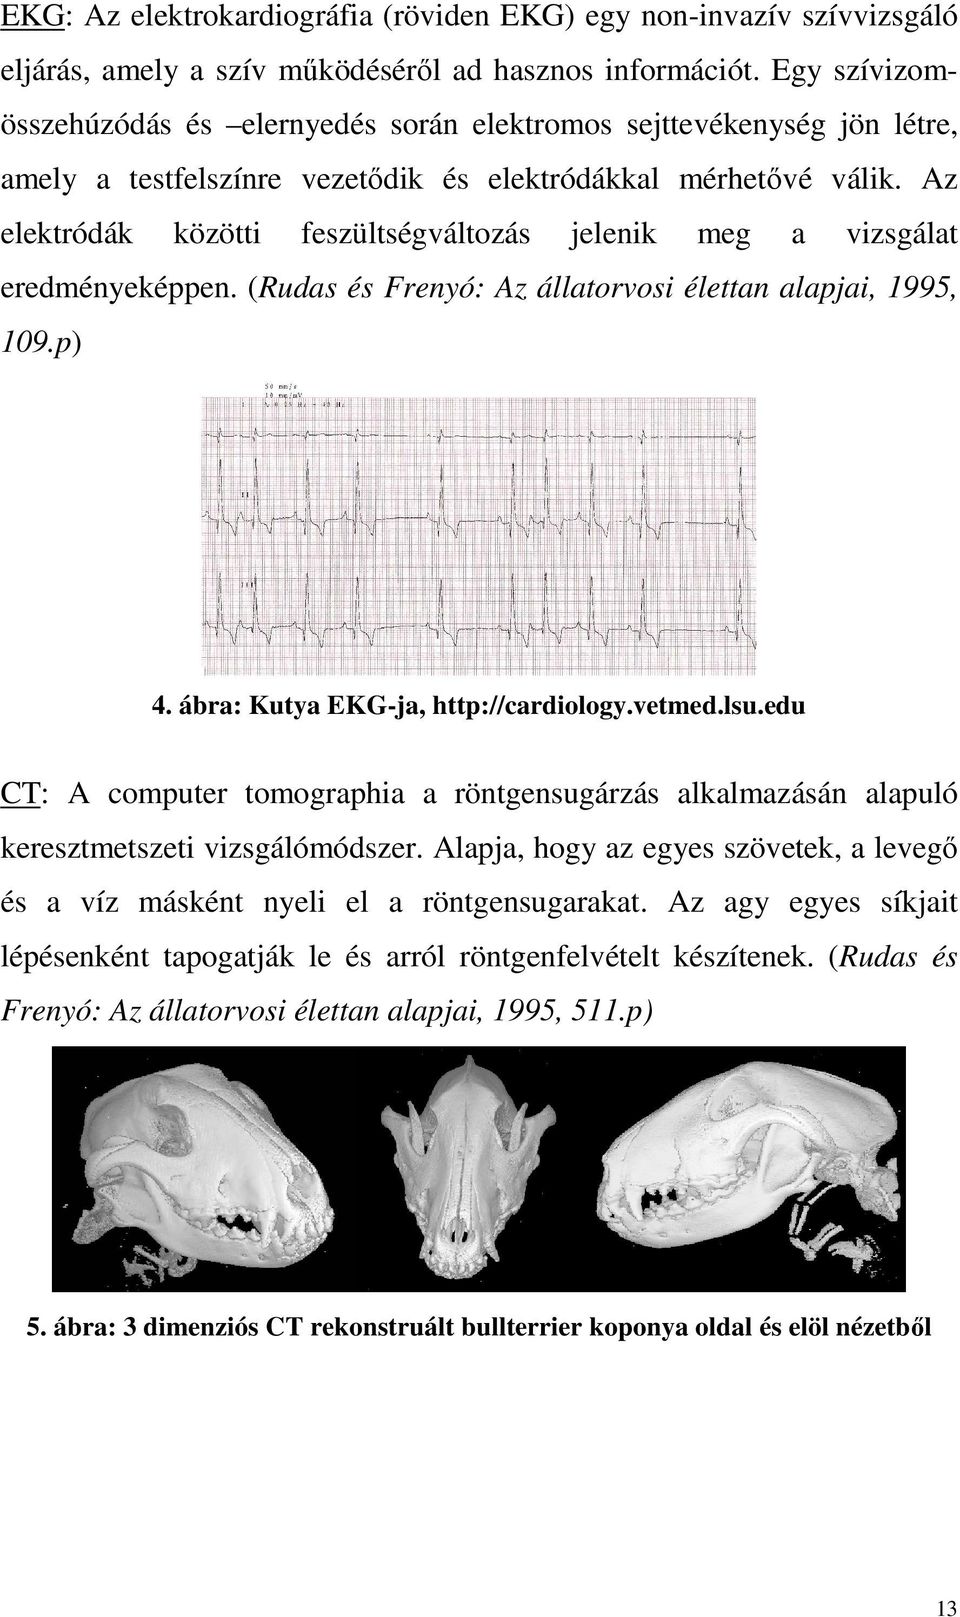 Az elektródák közötti feszültségváltozás jelenik meg a vizsgálat eredményeképpen. (Rudas és Frenyó: Az állatorvosi élettan alapjai, 1995, 109.p) 4. ábra: Kutya EKG-ja, http://cardiology.vetmed.lsu.